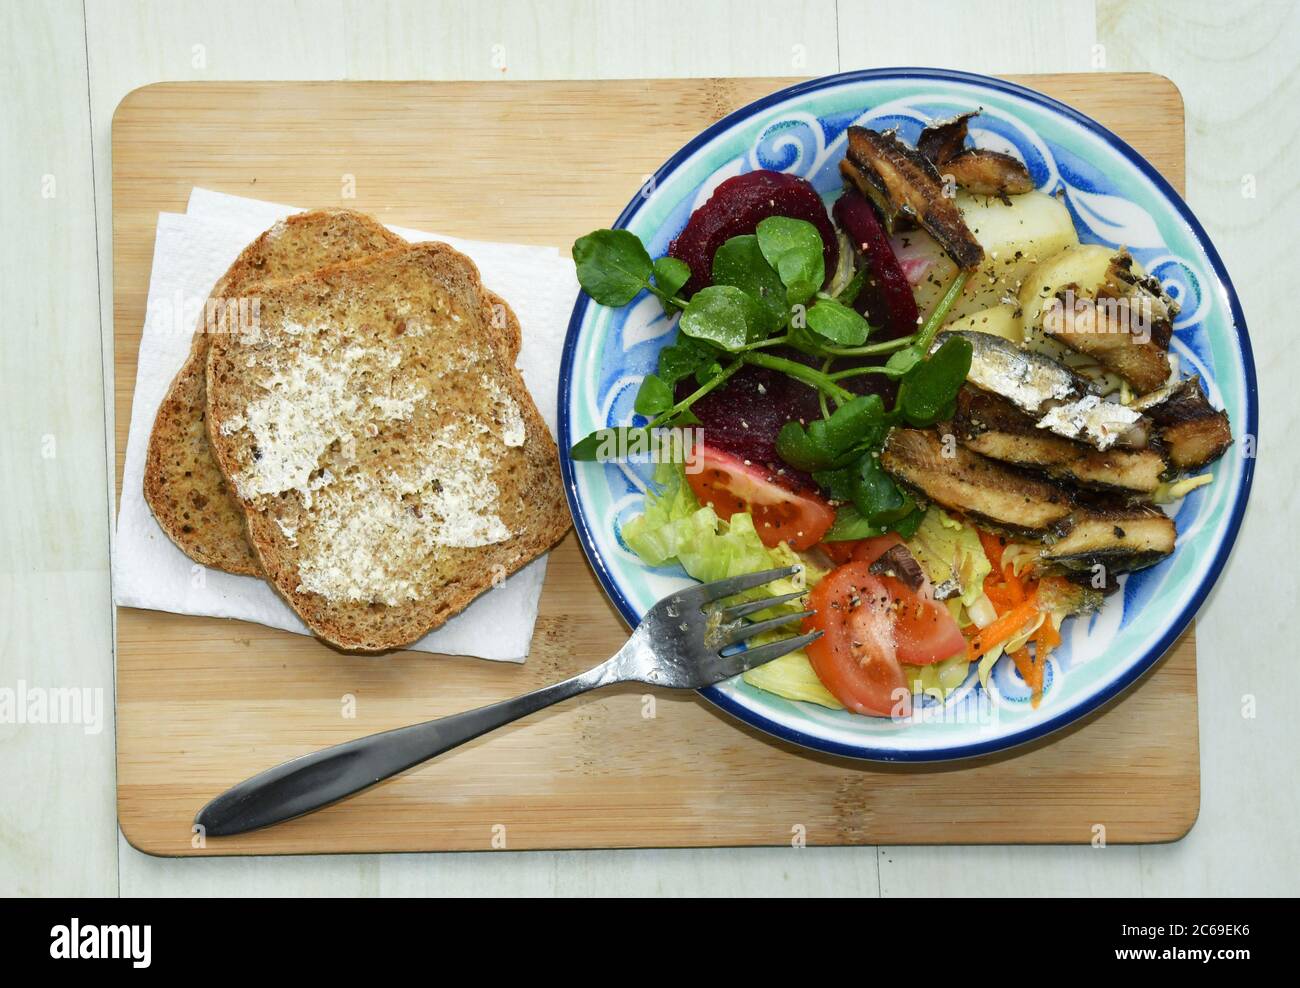 Ein leichtes Mittagessen mit gegrillten Sardinen auf einem Bett mit Krautsalat, Salat, Tomaten, kalten neuen Kartoffeln, Rote Bete und Brunnenkresse mit hausgemachtem Vollkornbrot Stockfoto